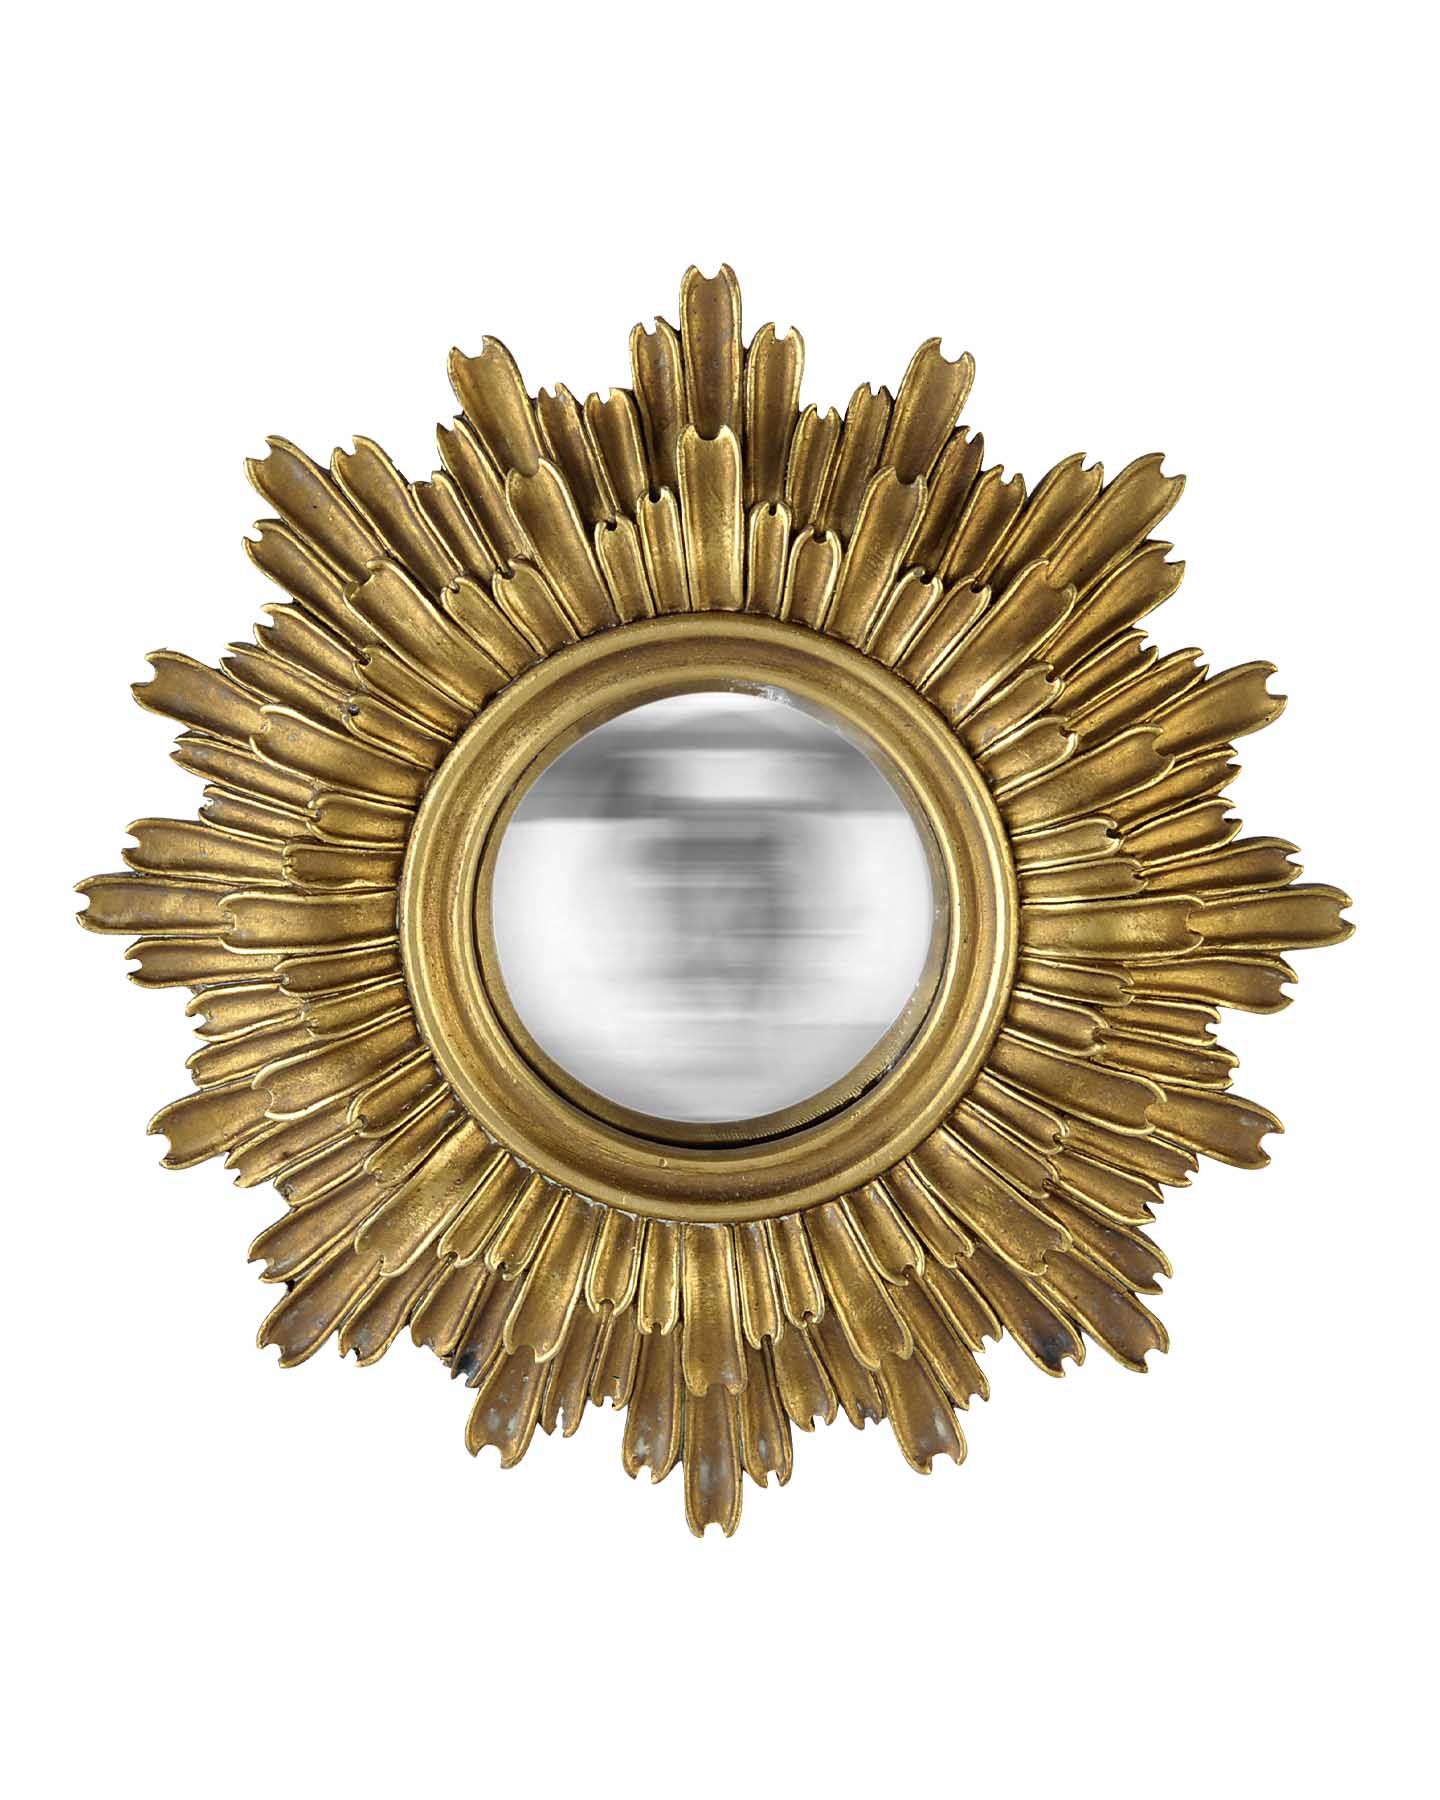 Miroir rond, LILA Convexe, diam. 20,8 cm, doré